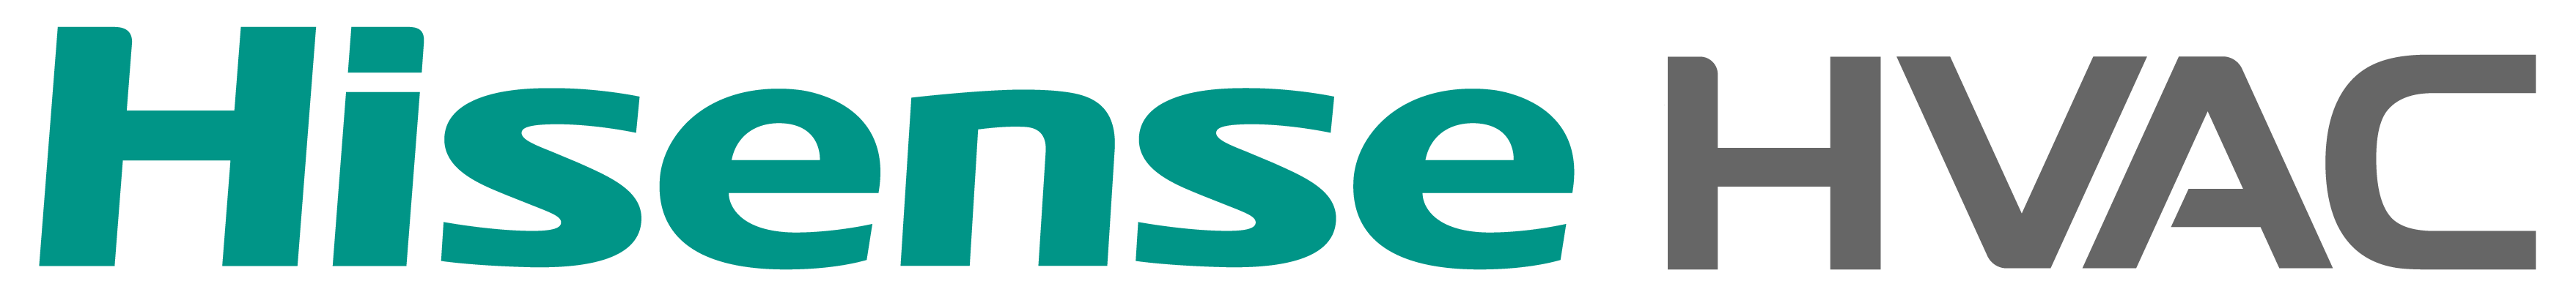 Hisense-HVAC-logo-01-1